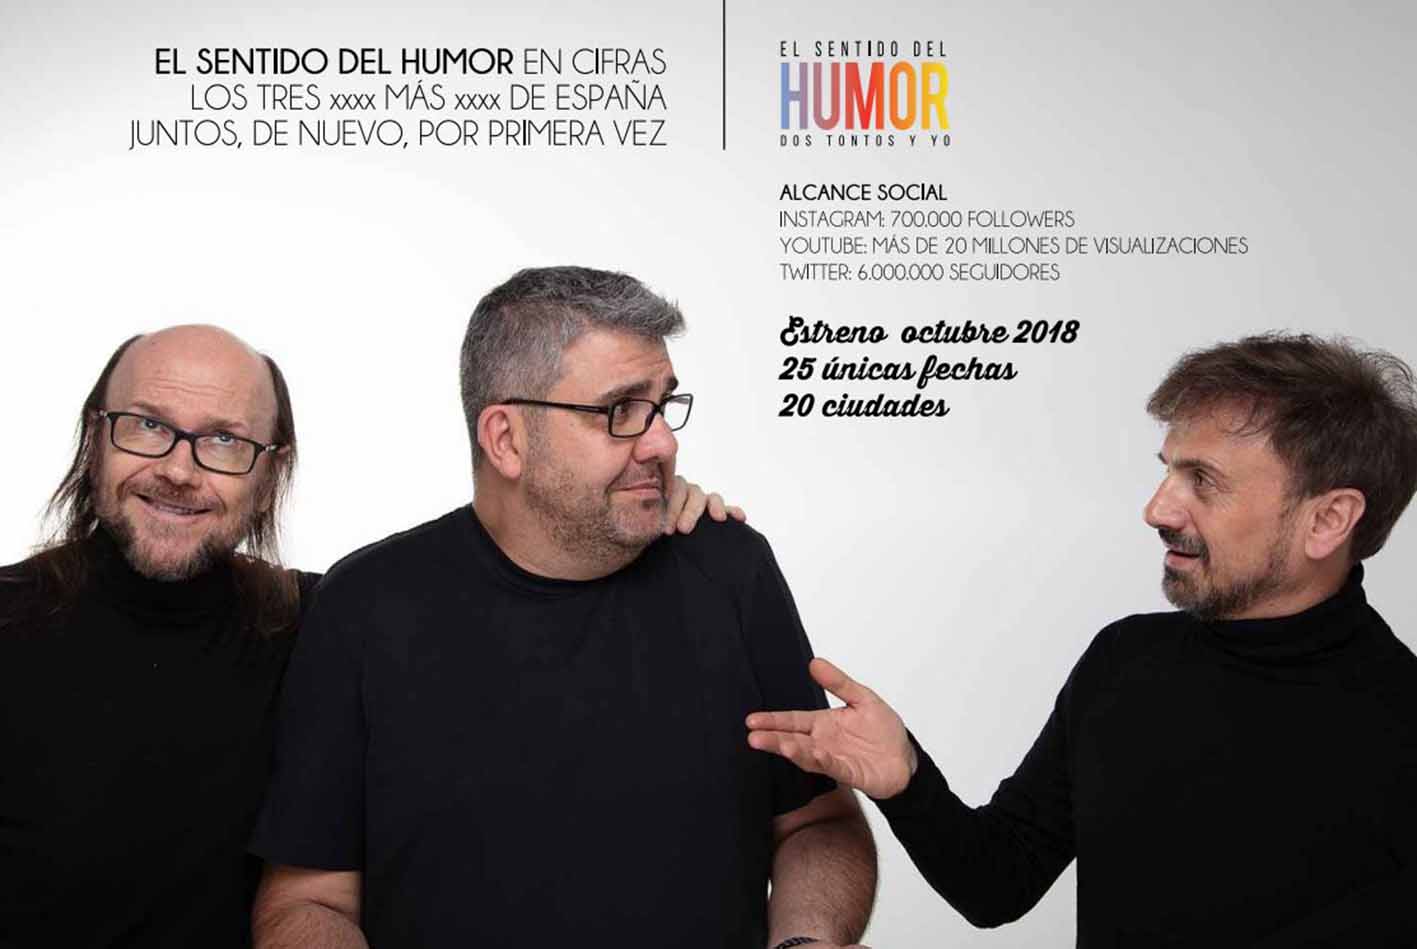 Aplazado el espectáculo de estos tres humoristas hasta 2023. Foto subida de la web elsentidodelhumor,com.